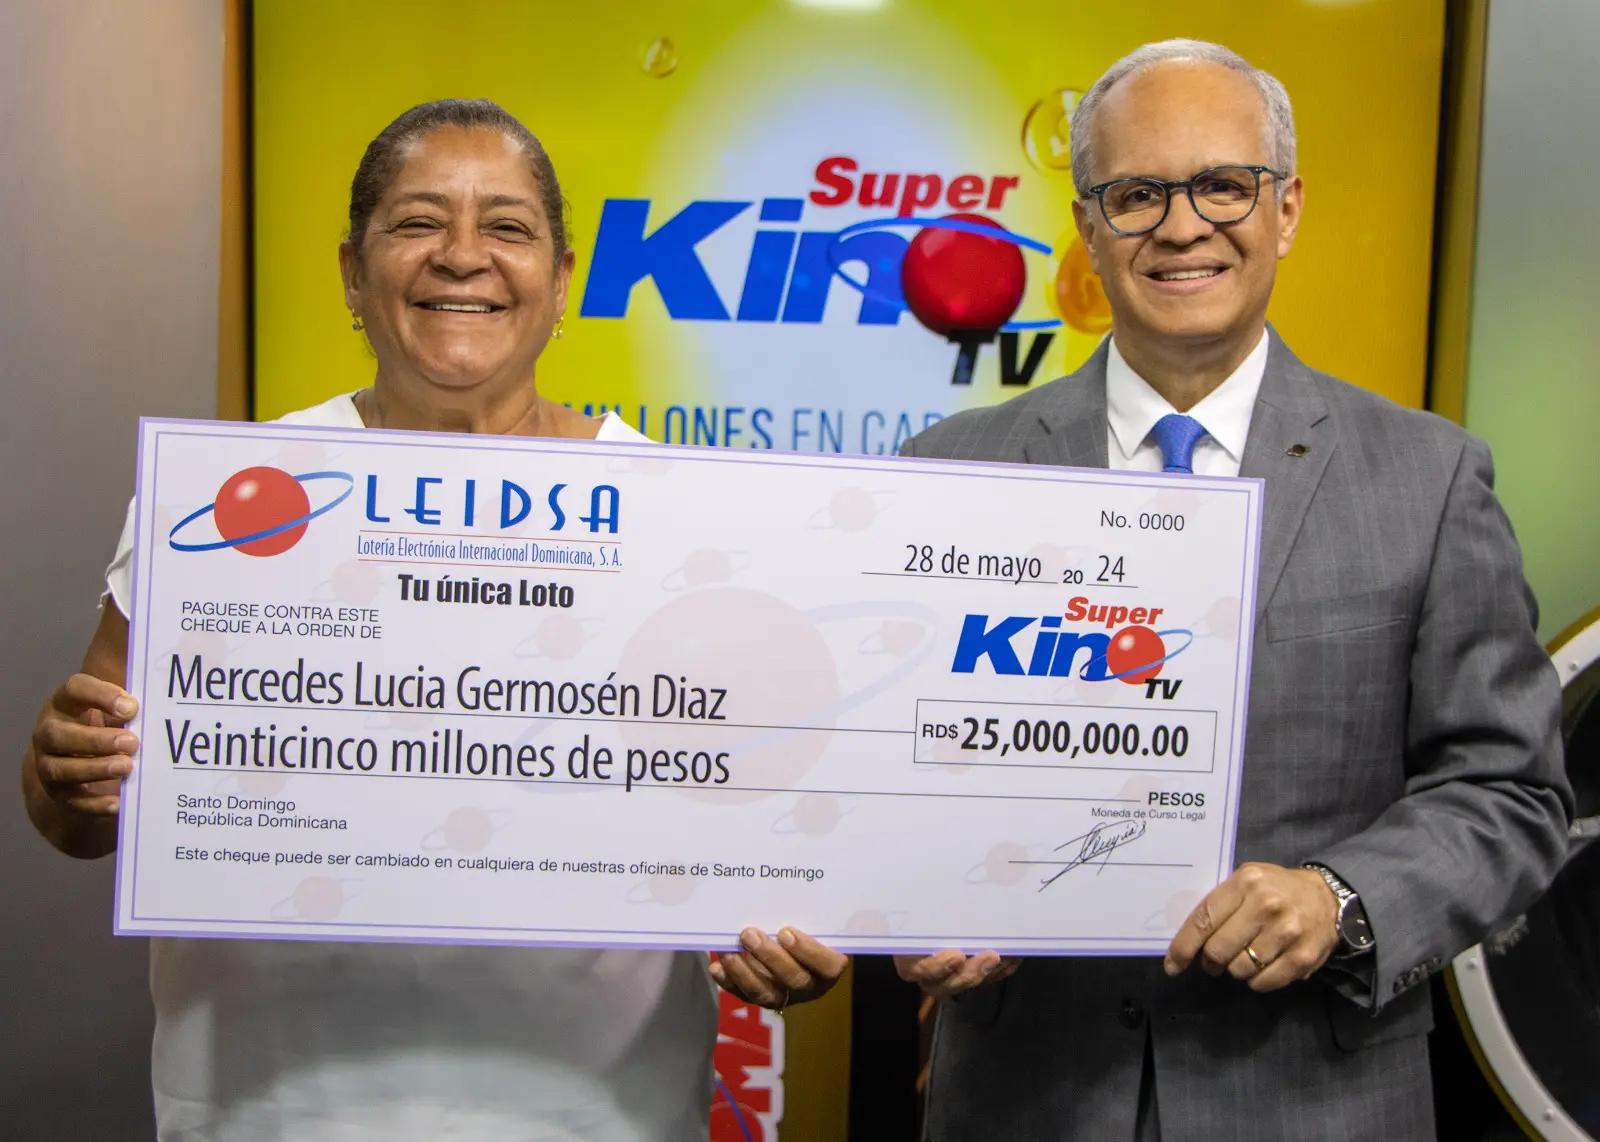 LEIDSA entrega 25 millones a ama de casa ganadora del Súper Kino Tv. (foto, fuente externa)